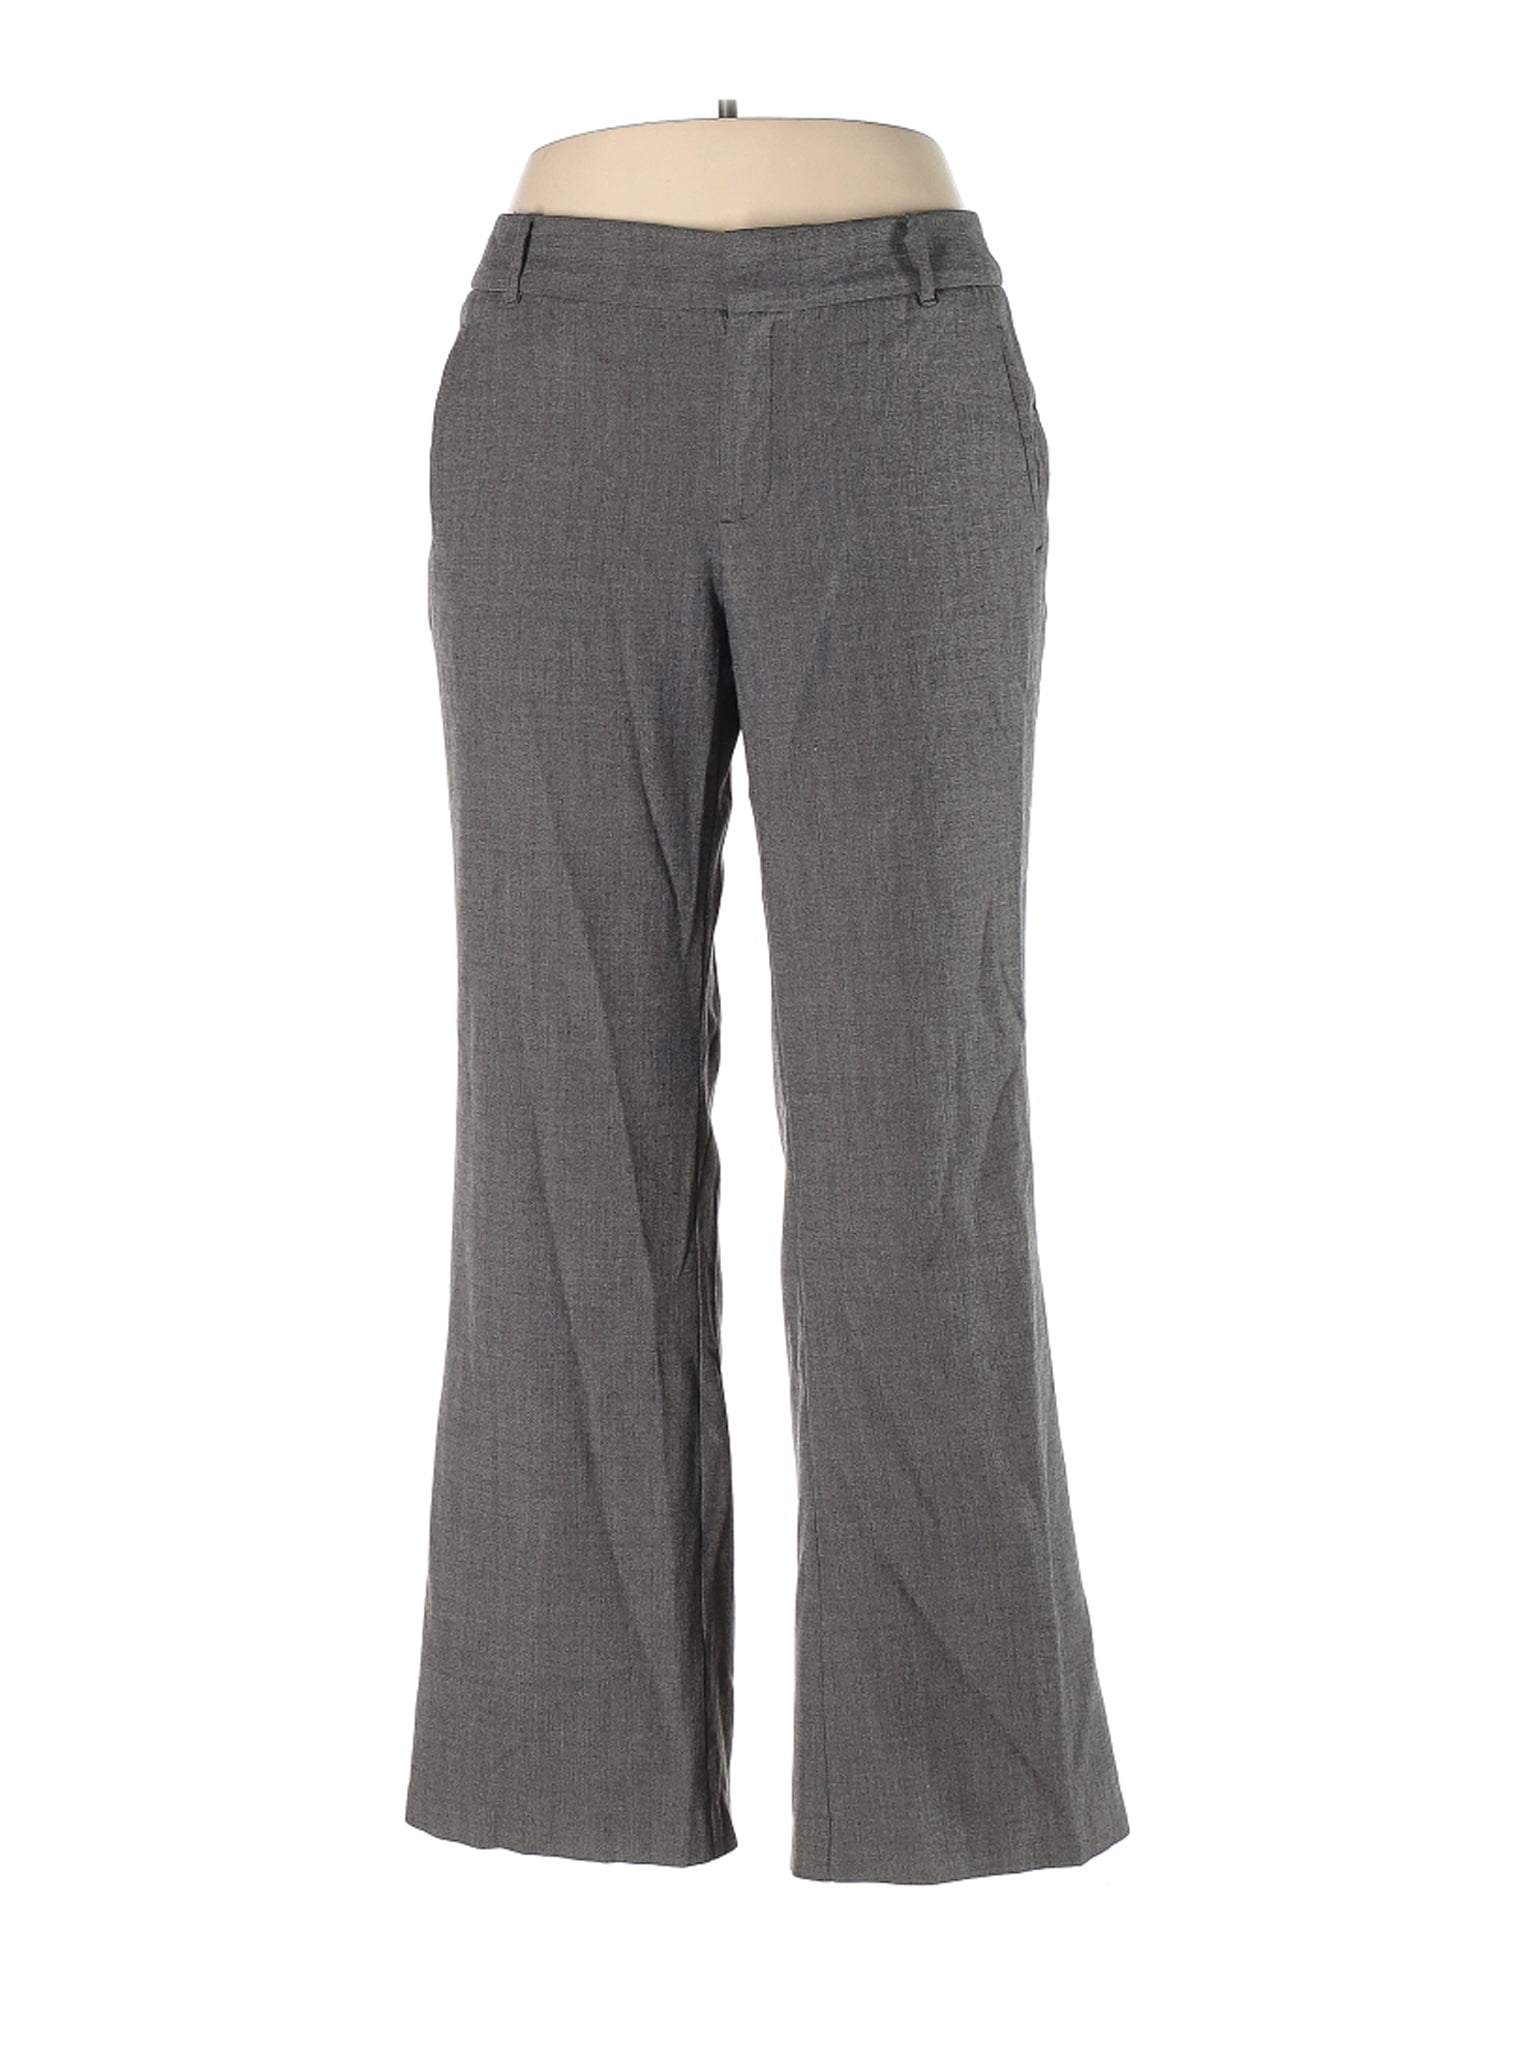 Dockers - Pre-Owned Dockers Women's Size 16 Dress Pants - Walmart.com ...